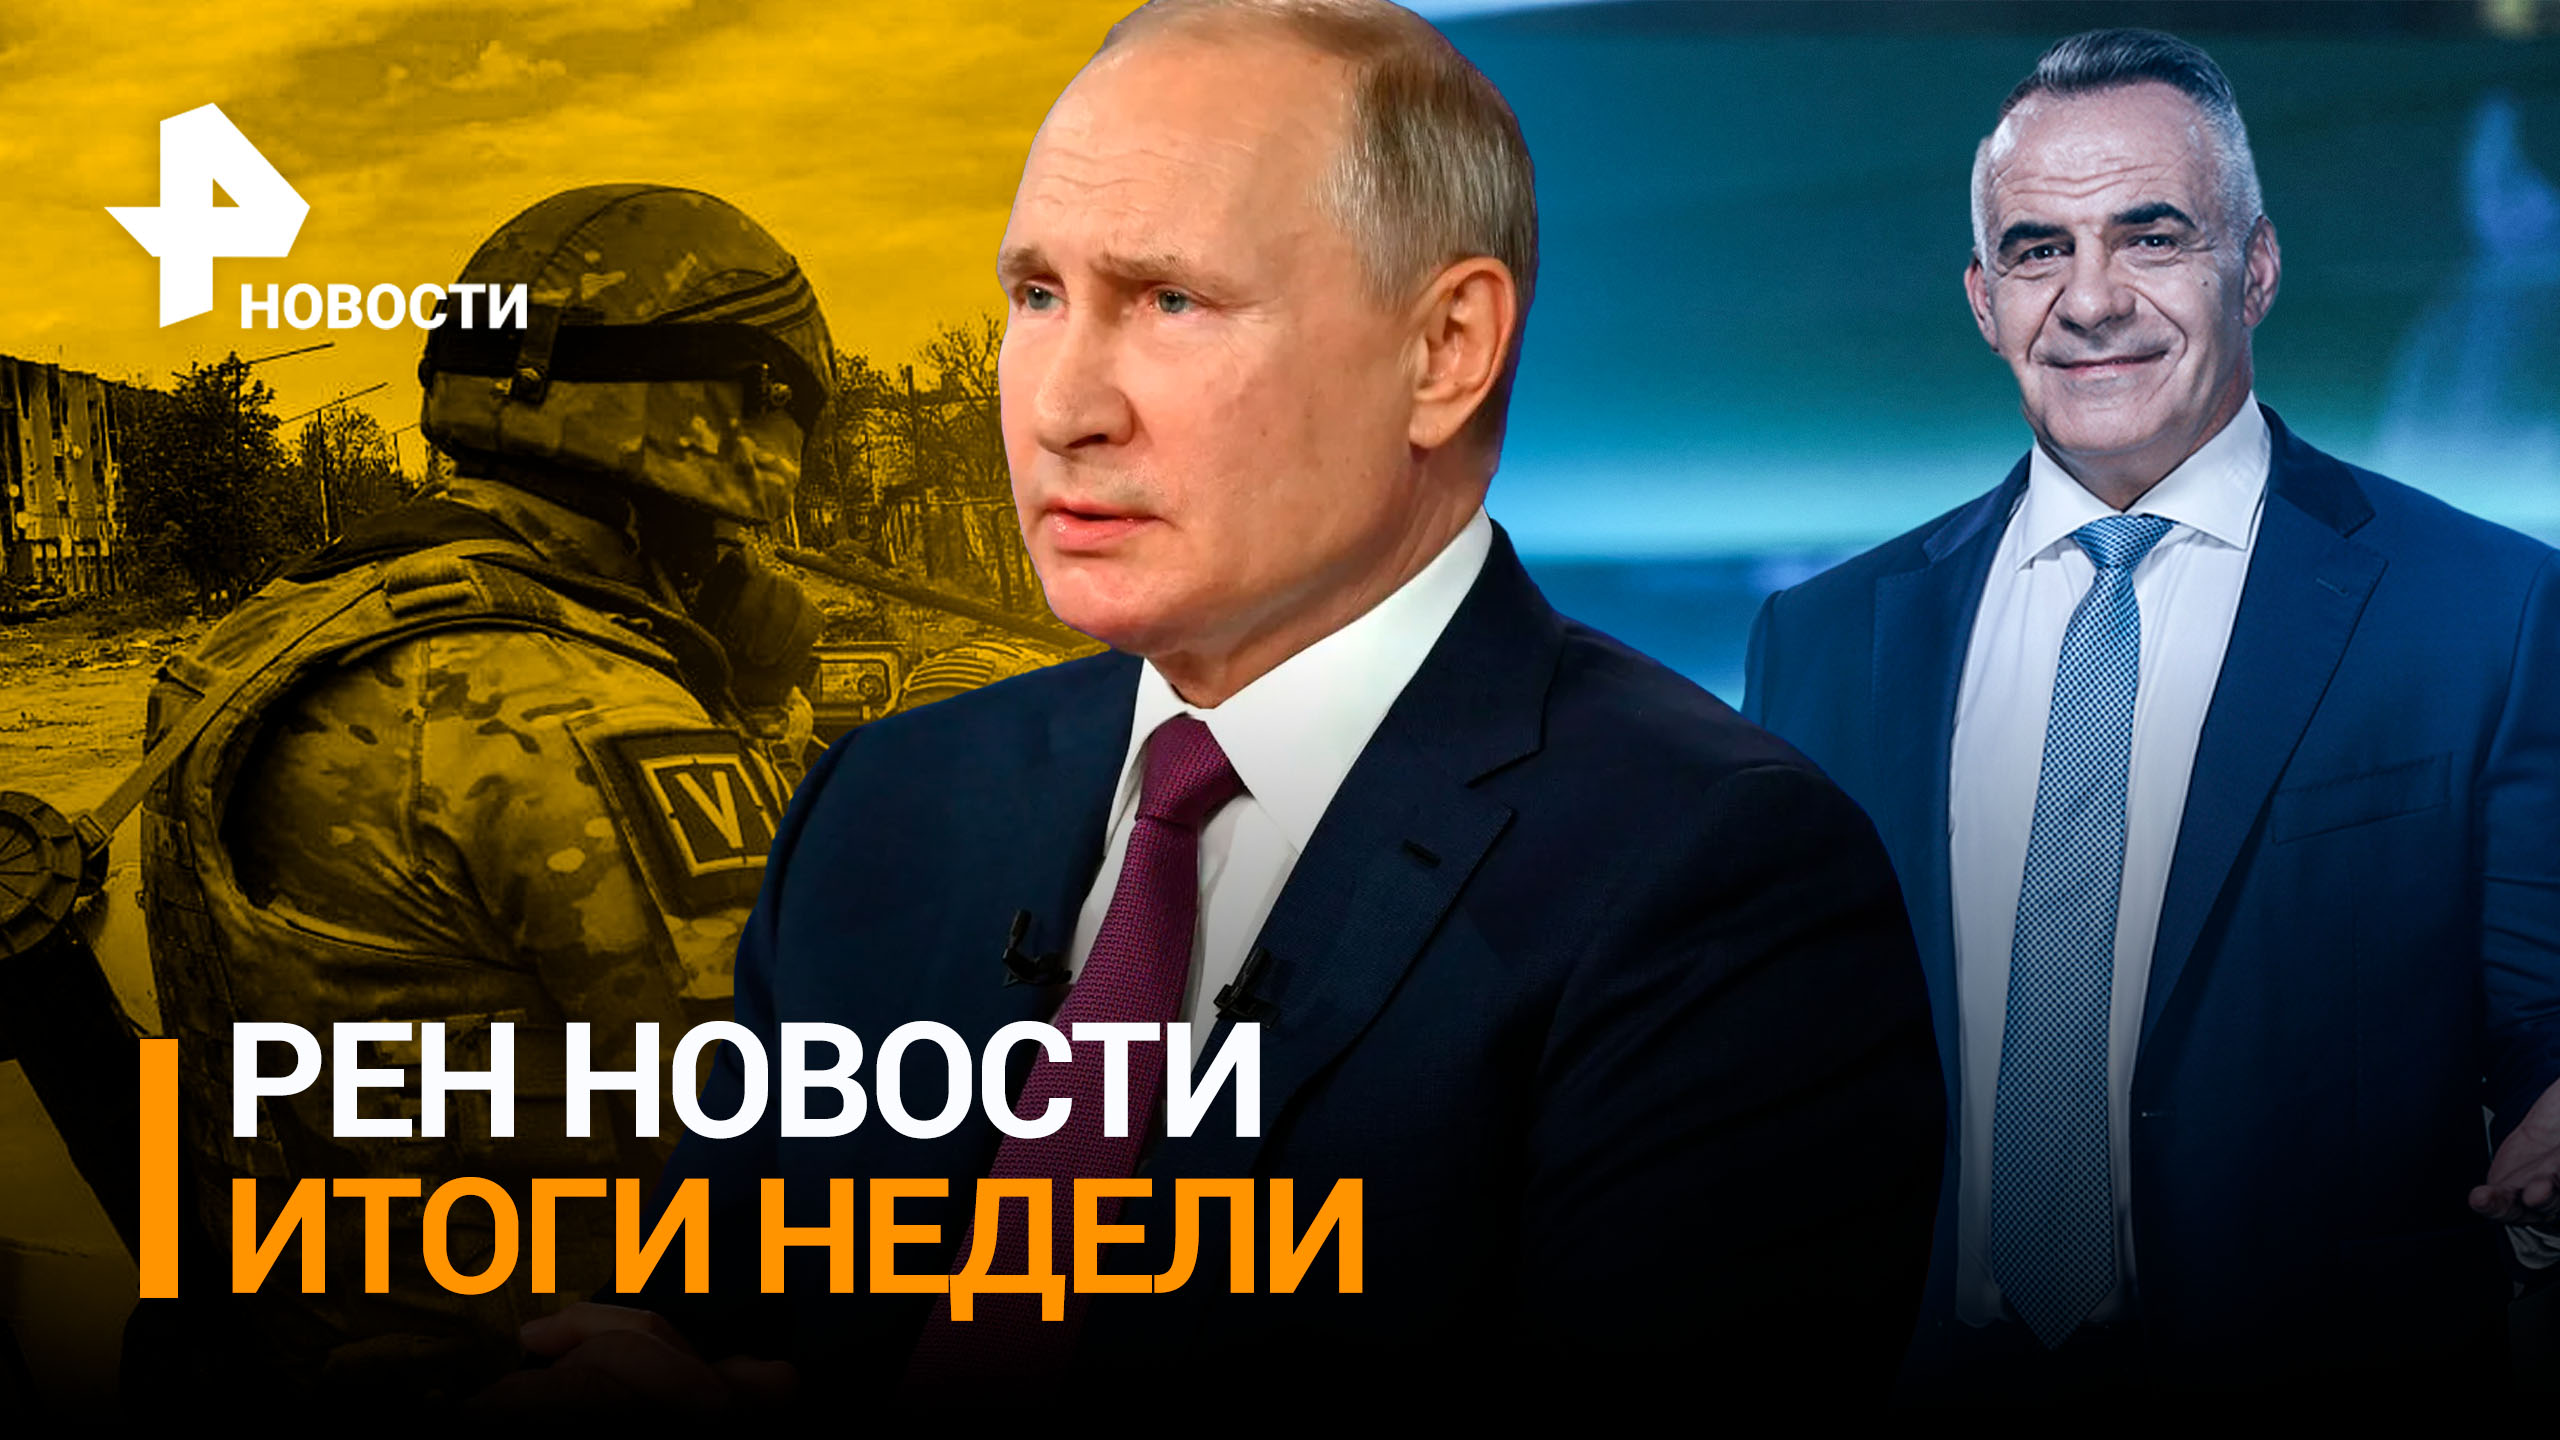 Можно ли говорить о начале наступления Армии РФ на Донбассе? / ИТОГИ НЕДЕЛИ с Марченко